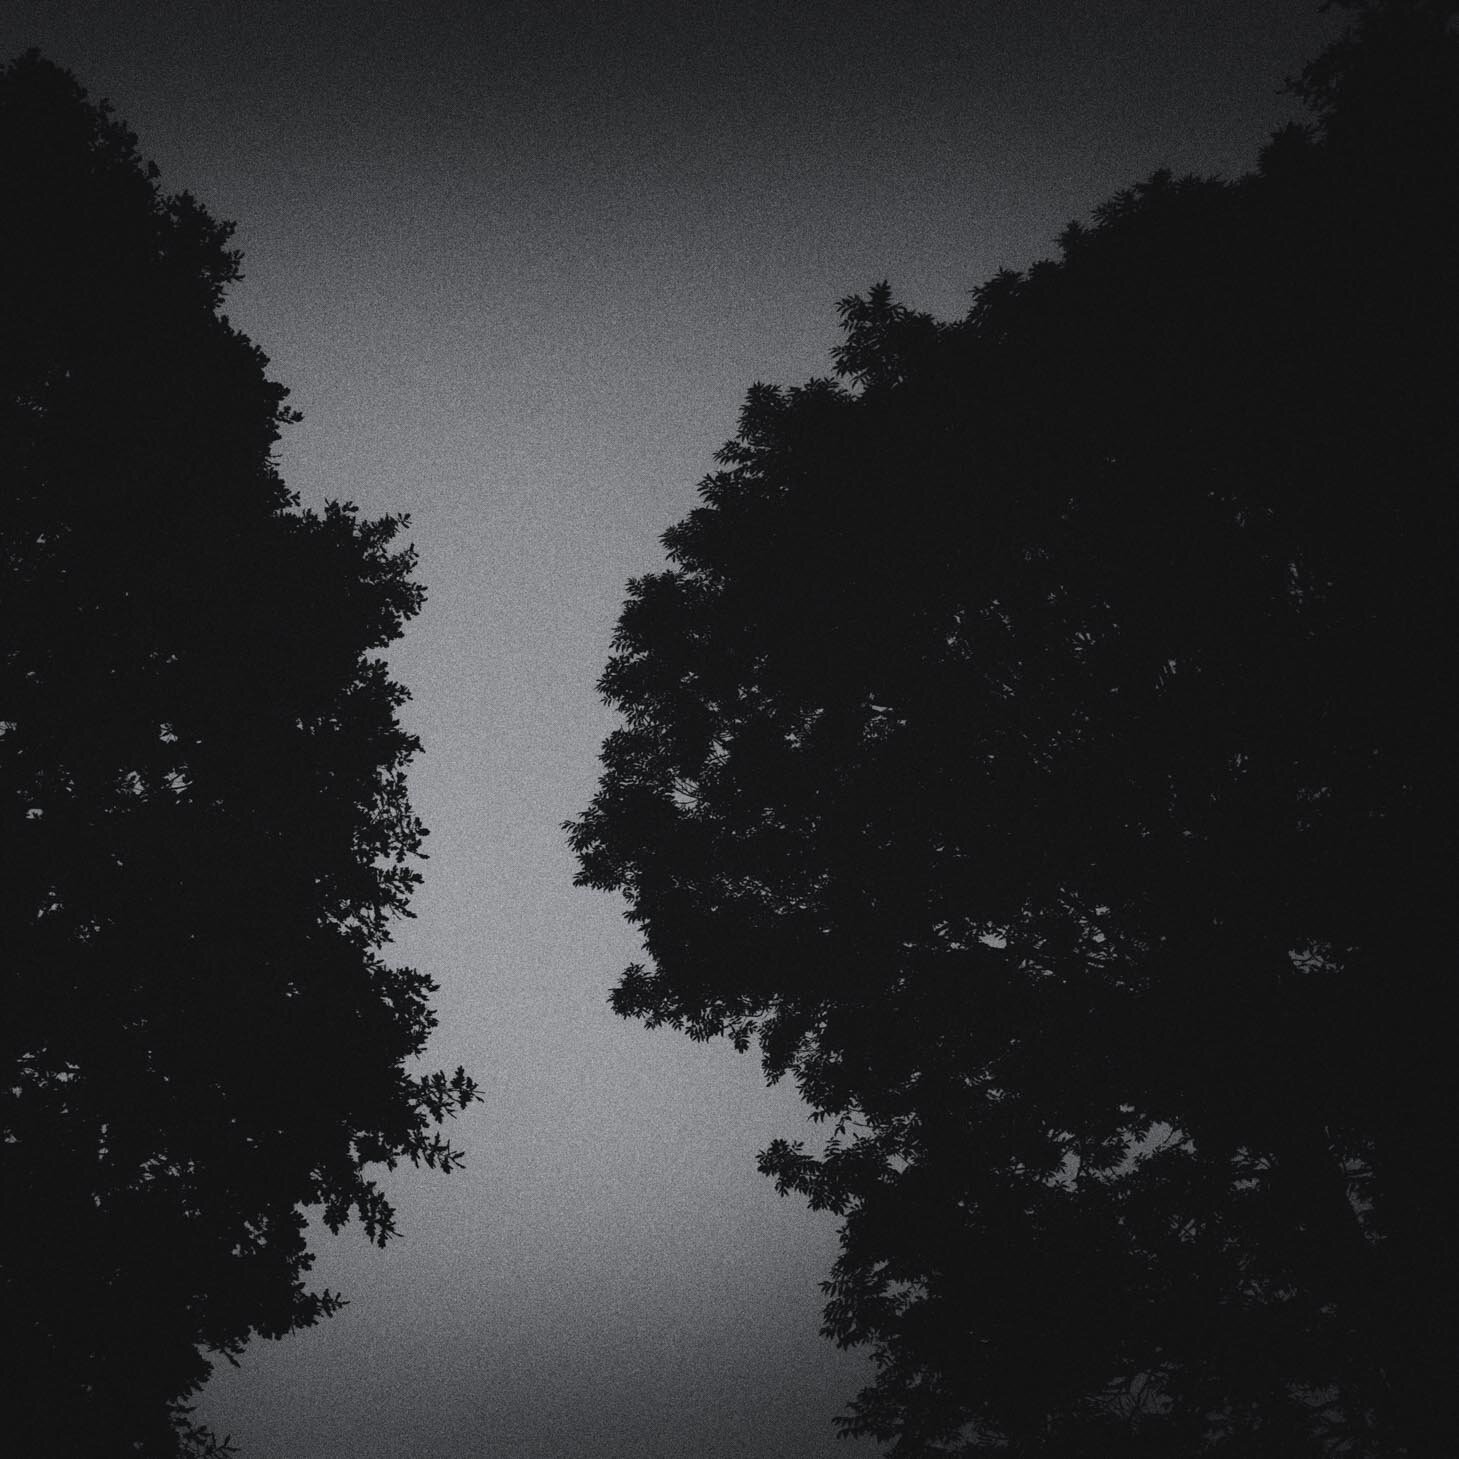 Trees at Night LD-9.jpg